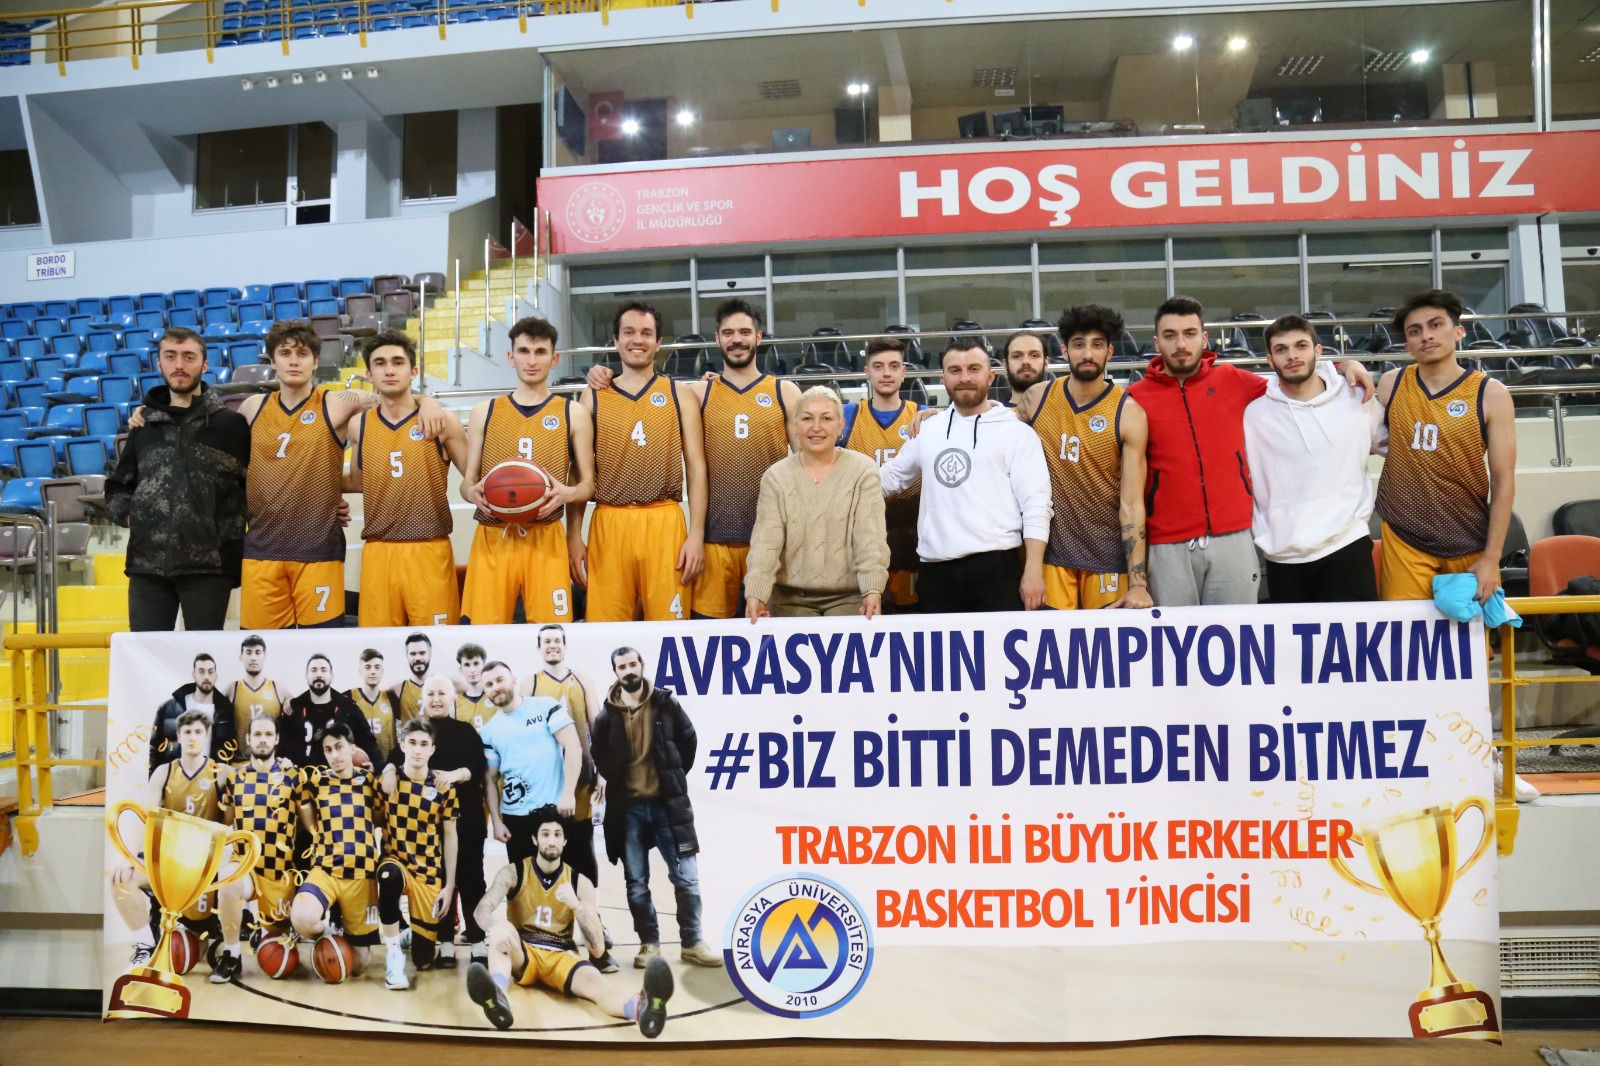 Avrasya Üniversitesi öğrencilerinin oluşturduğu basketbol takımı Trabzon birincisi oldu.